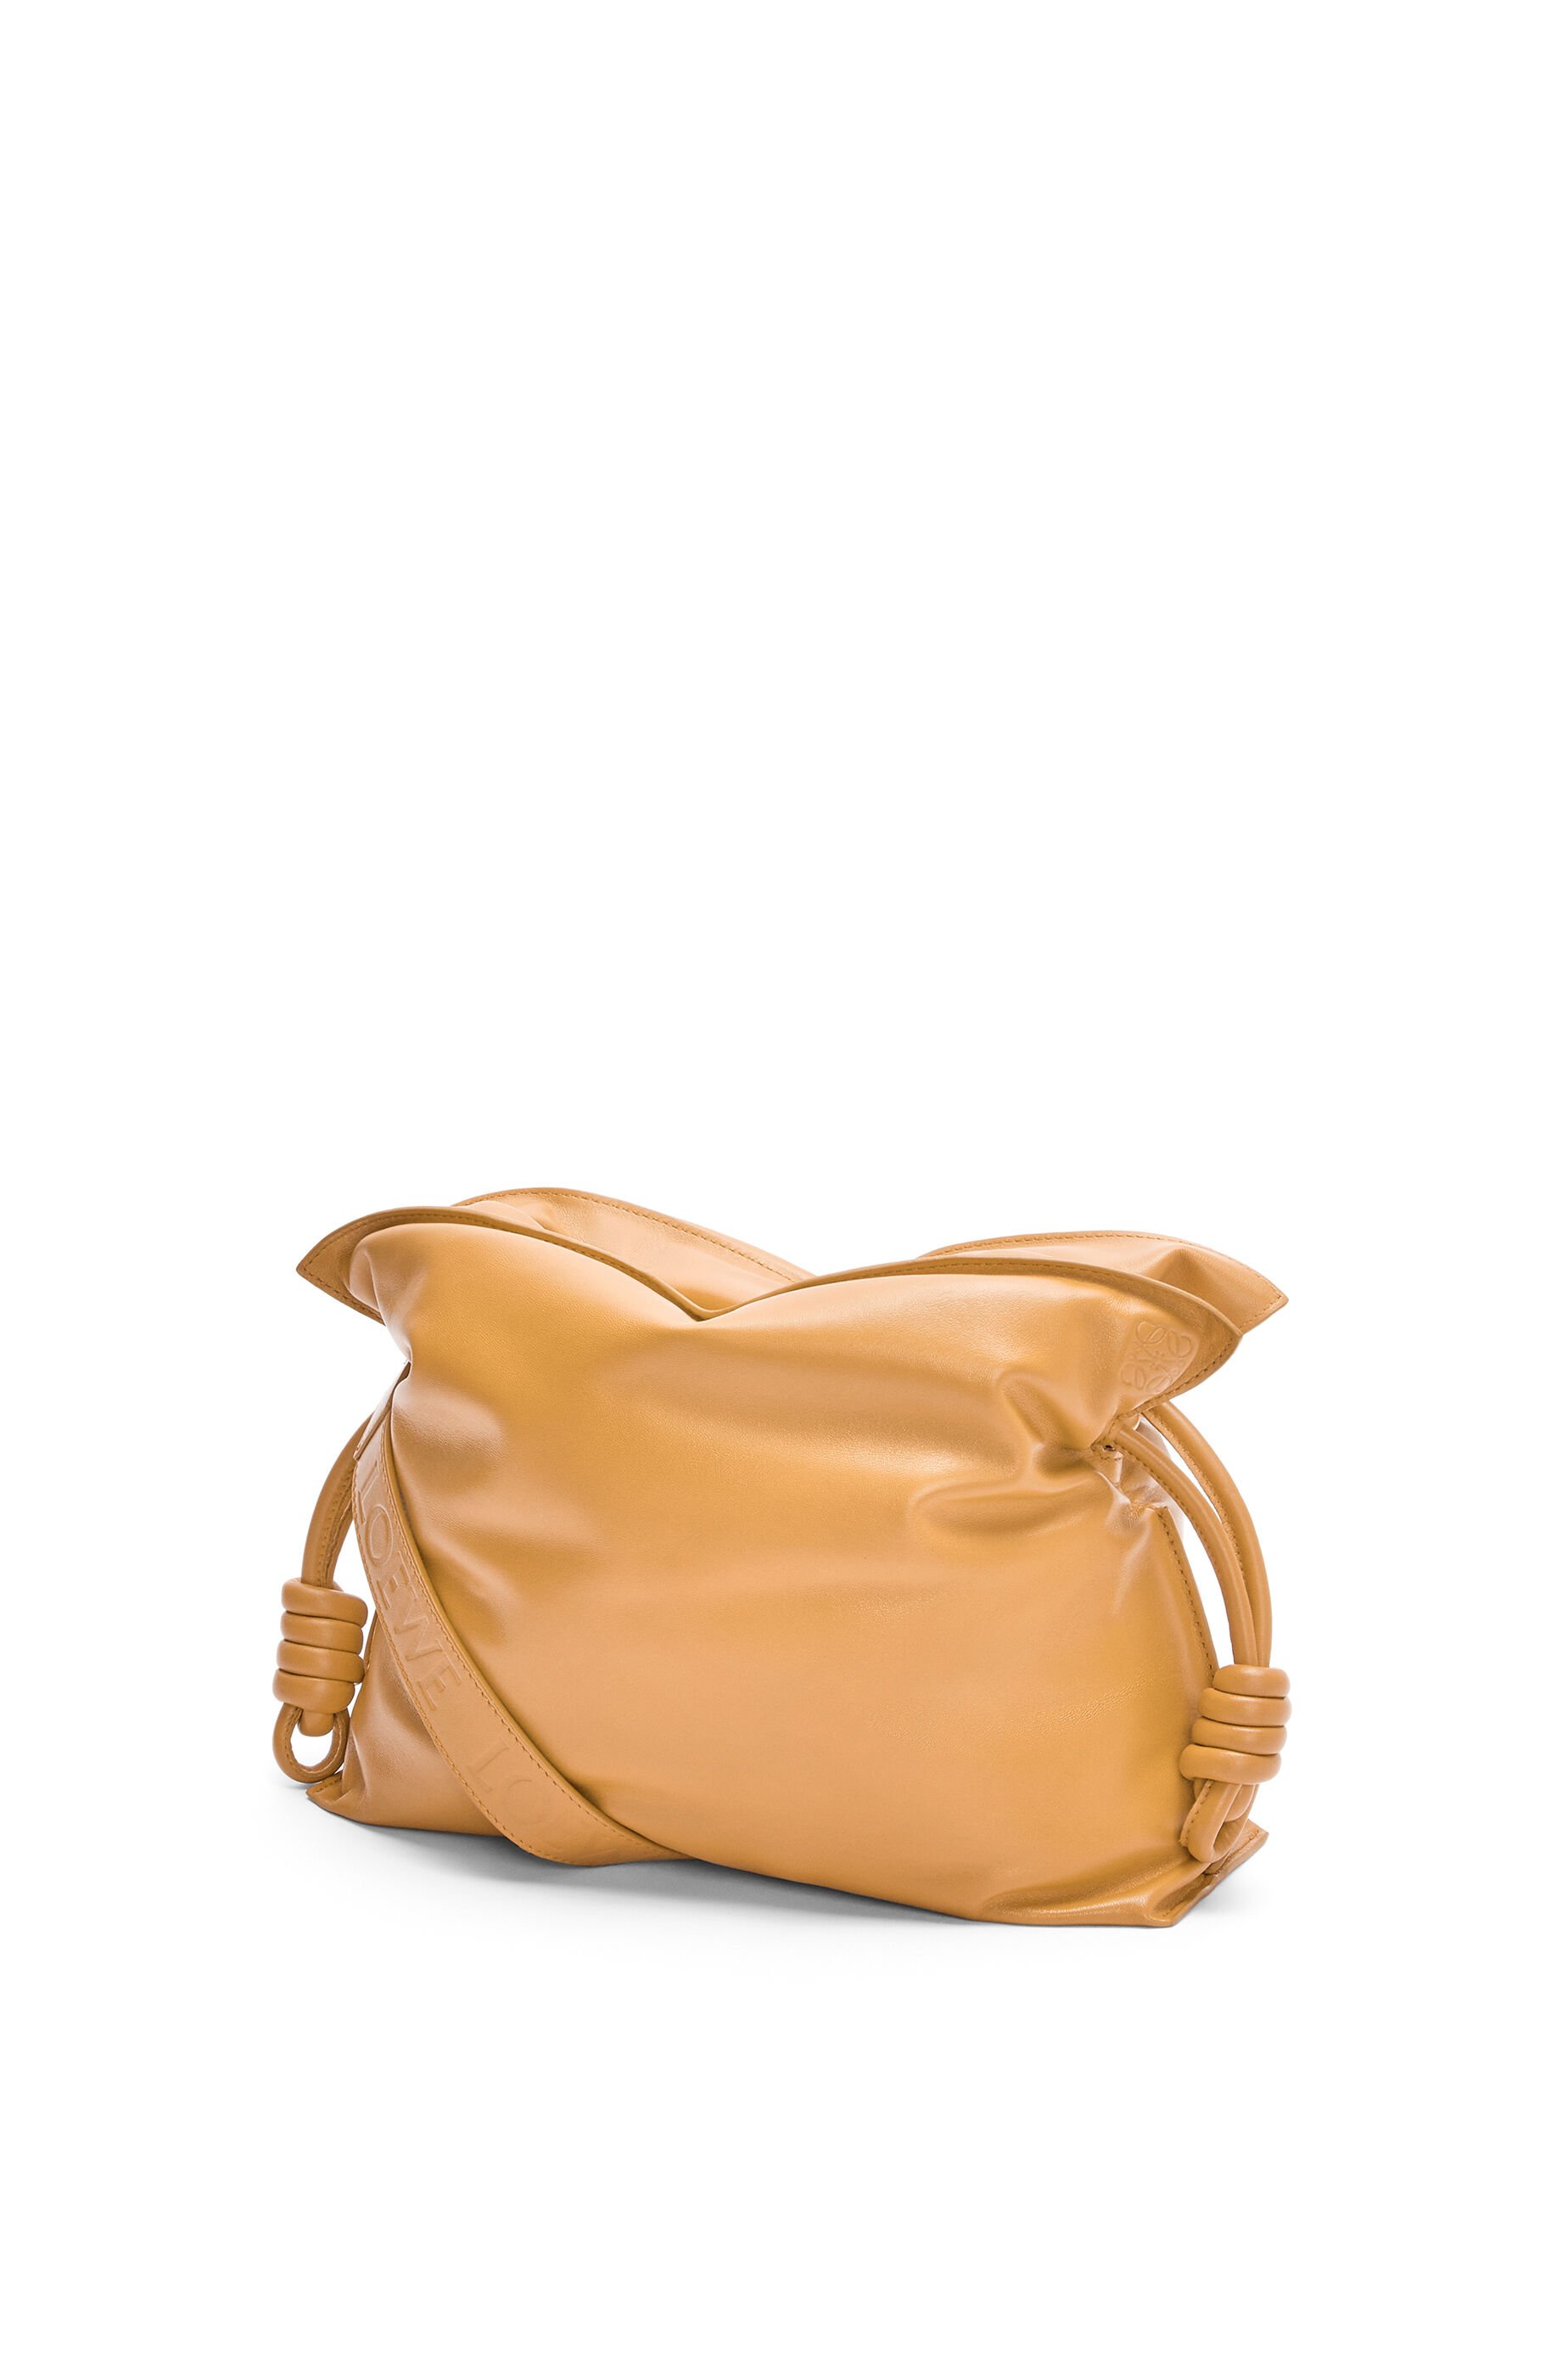 Clutch Goya de piel Loewe de Cuero de color Marrón carteras y bolsos de fiesta de Mujer Bolsos de Bolsos de mano 